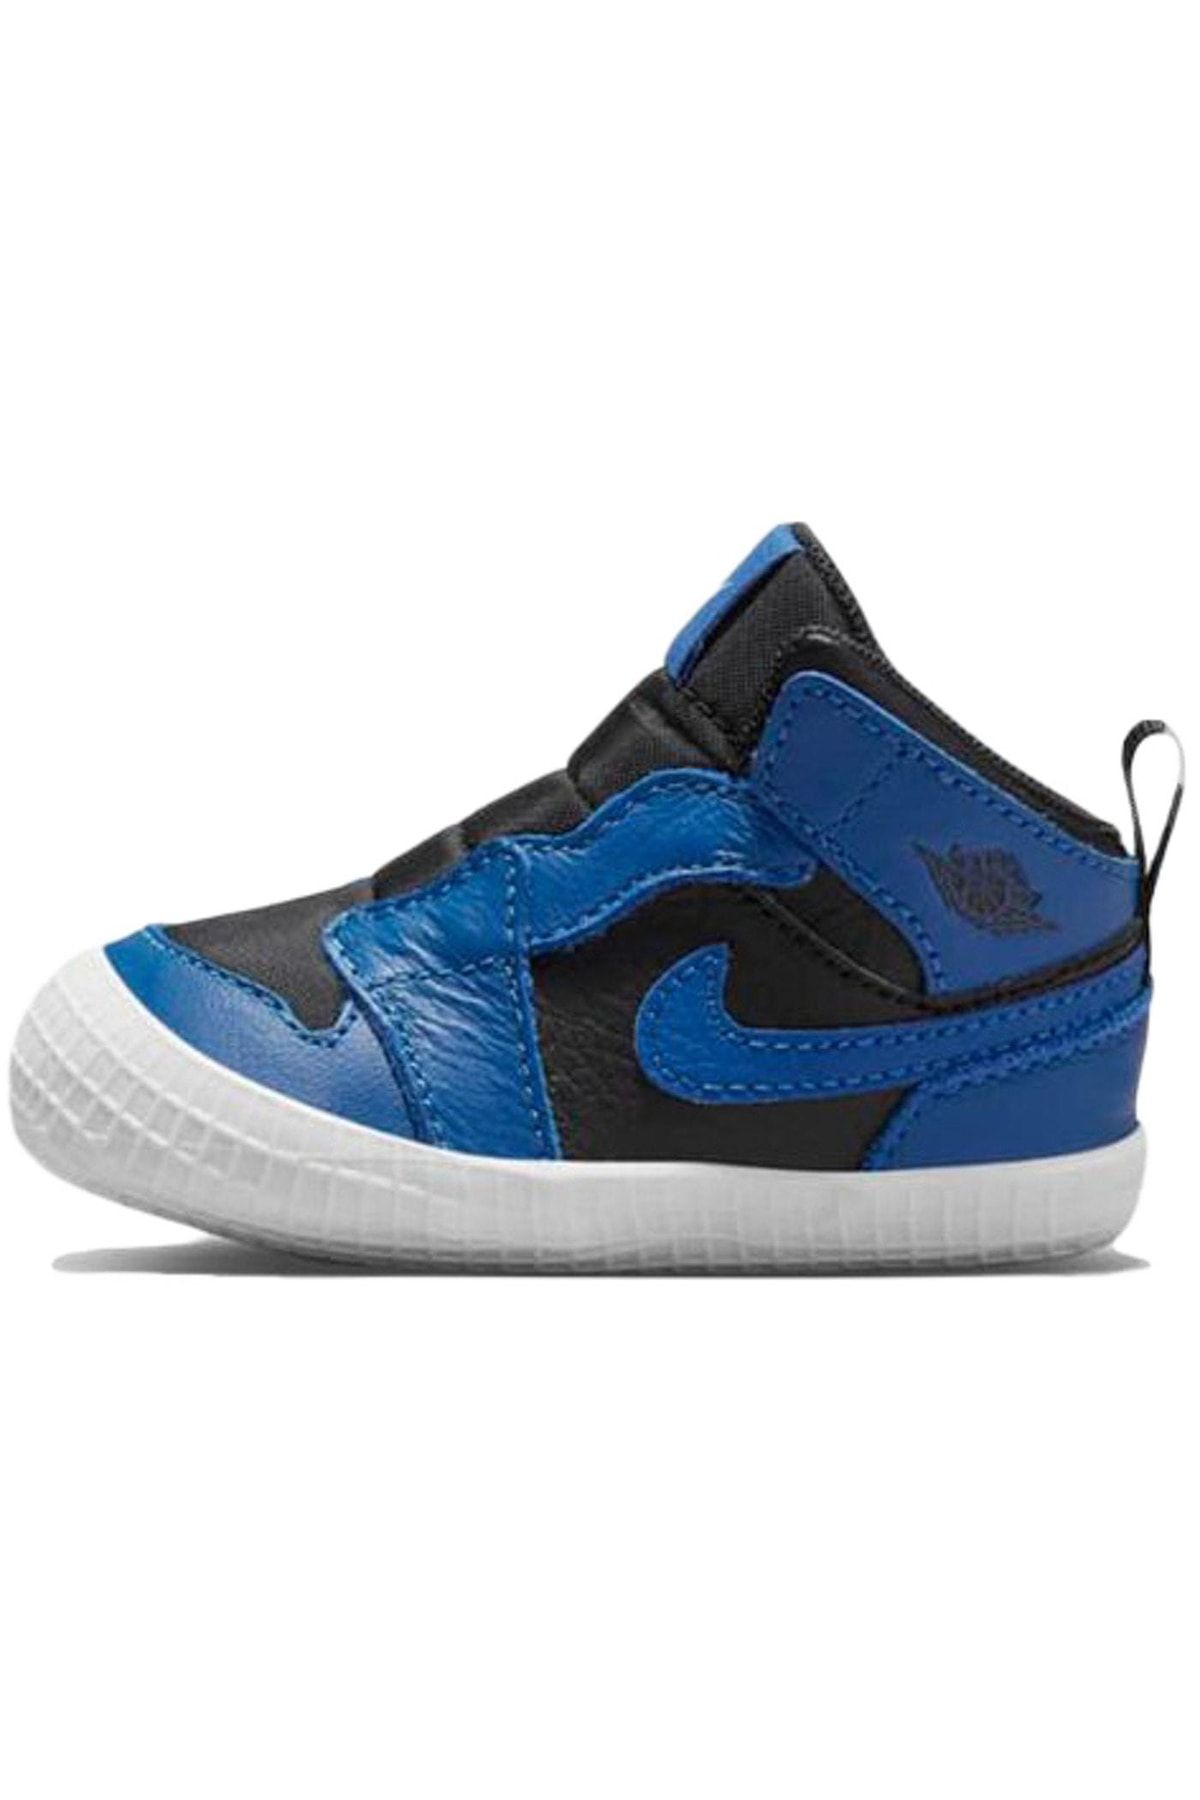 Nike Jordan 1 Crib Bootie Dark Marina Blue (ı) Çocuk Spor Ayakkabı - At3745-404